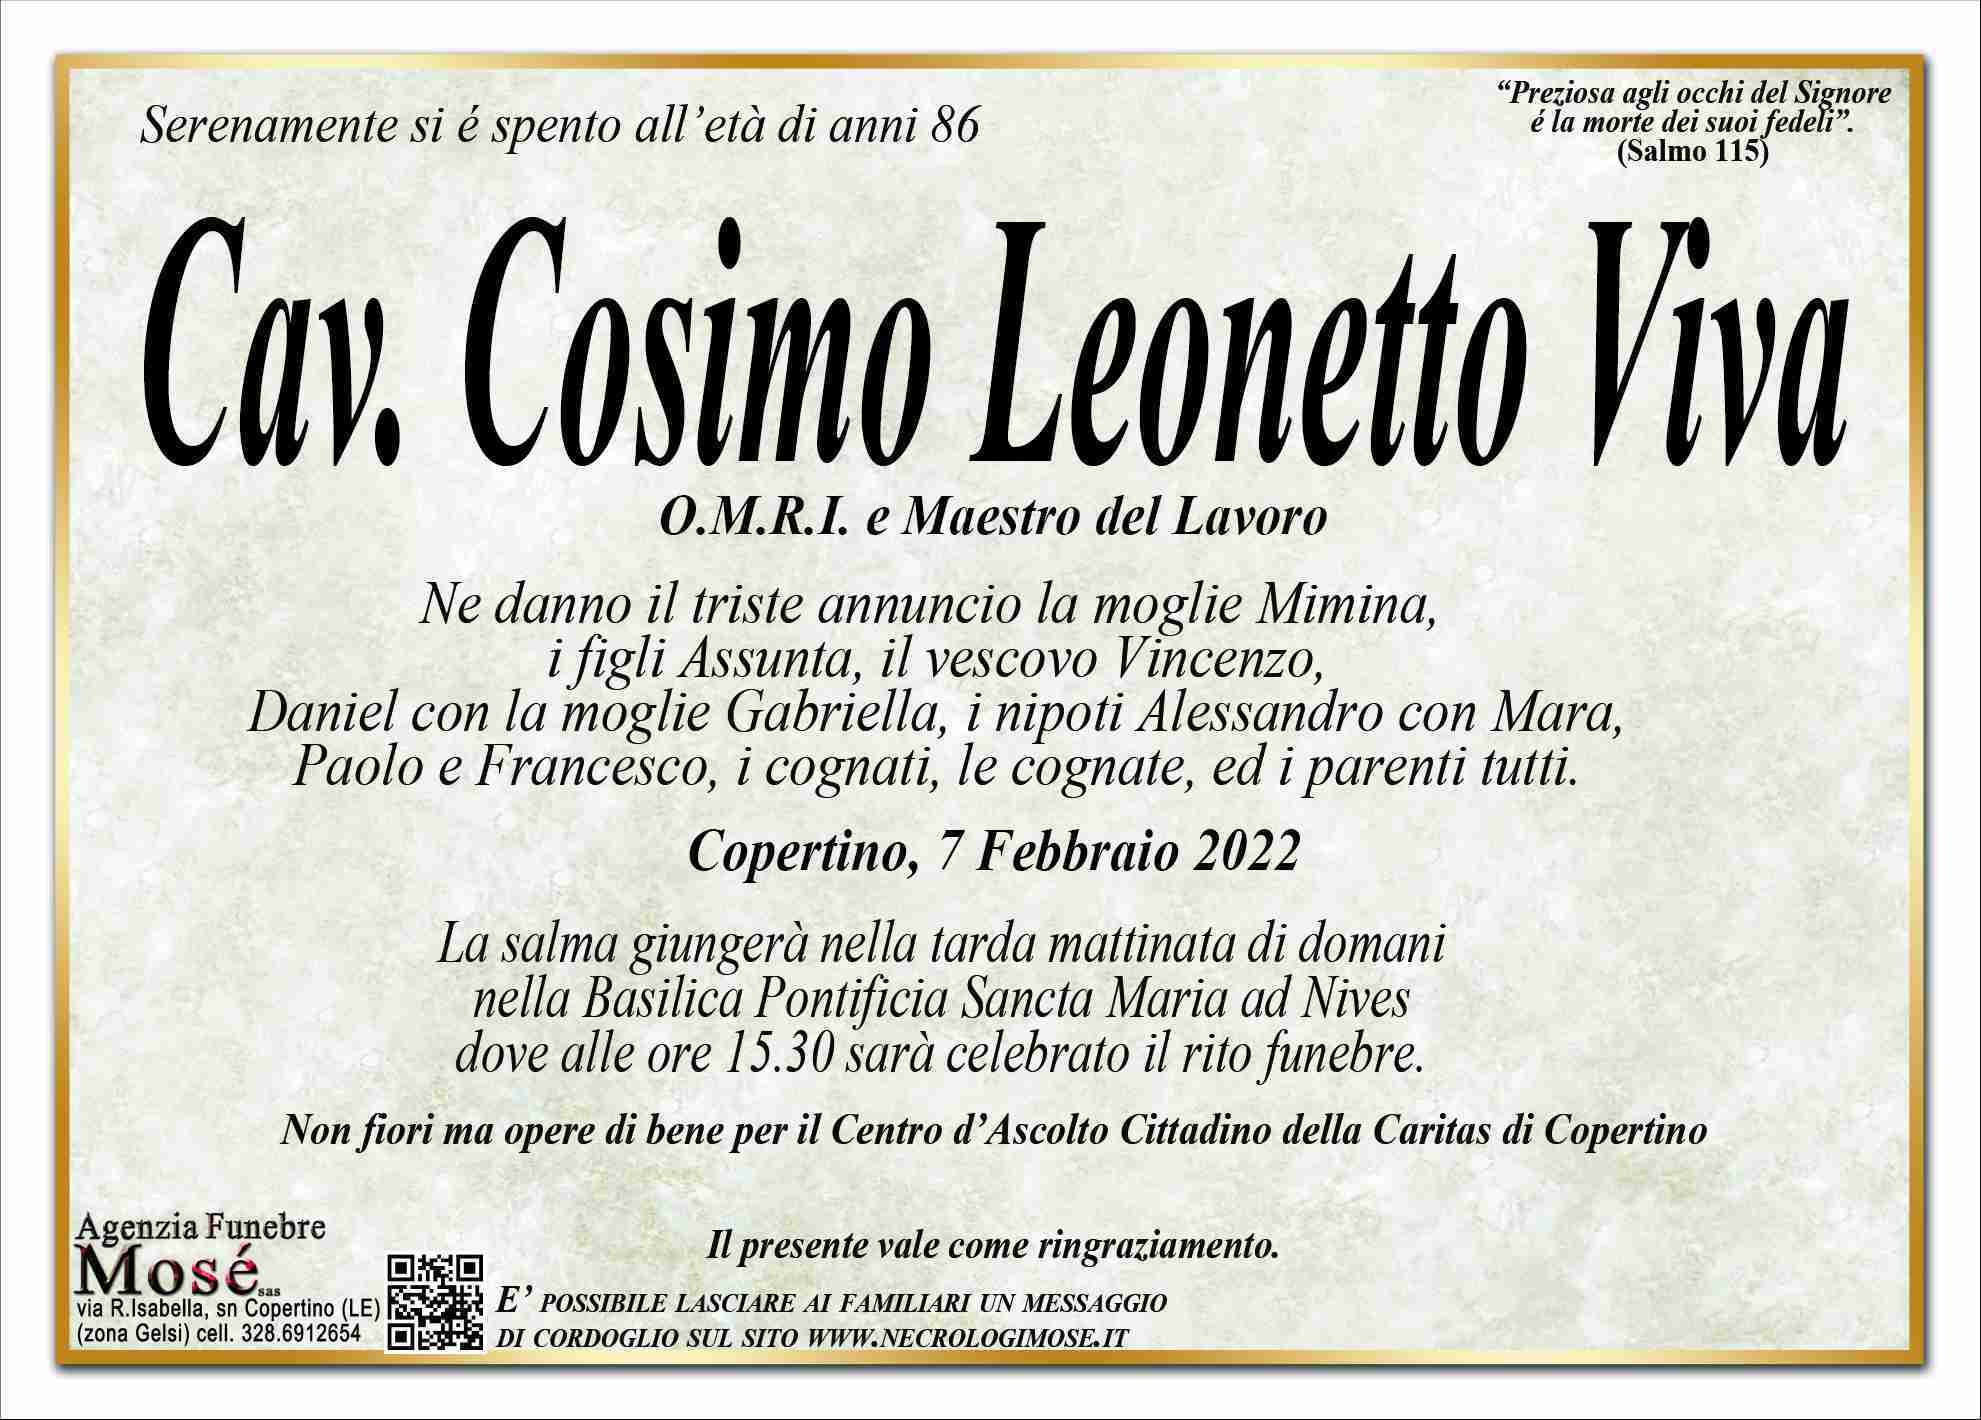 Cosimo Leonetto